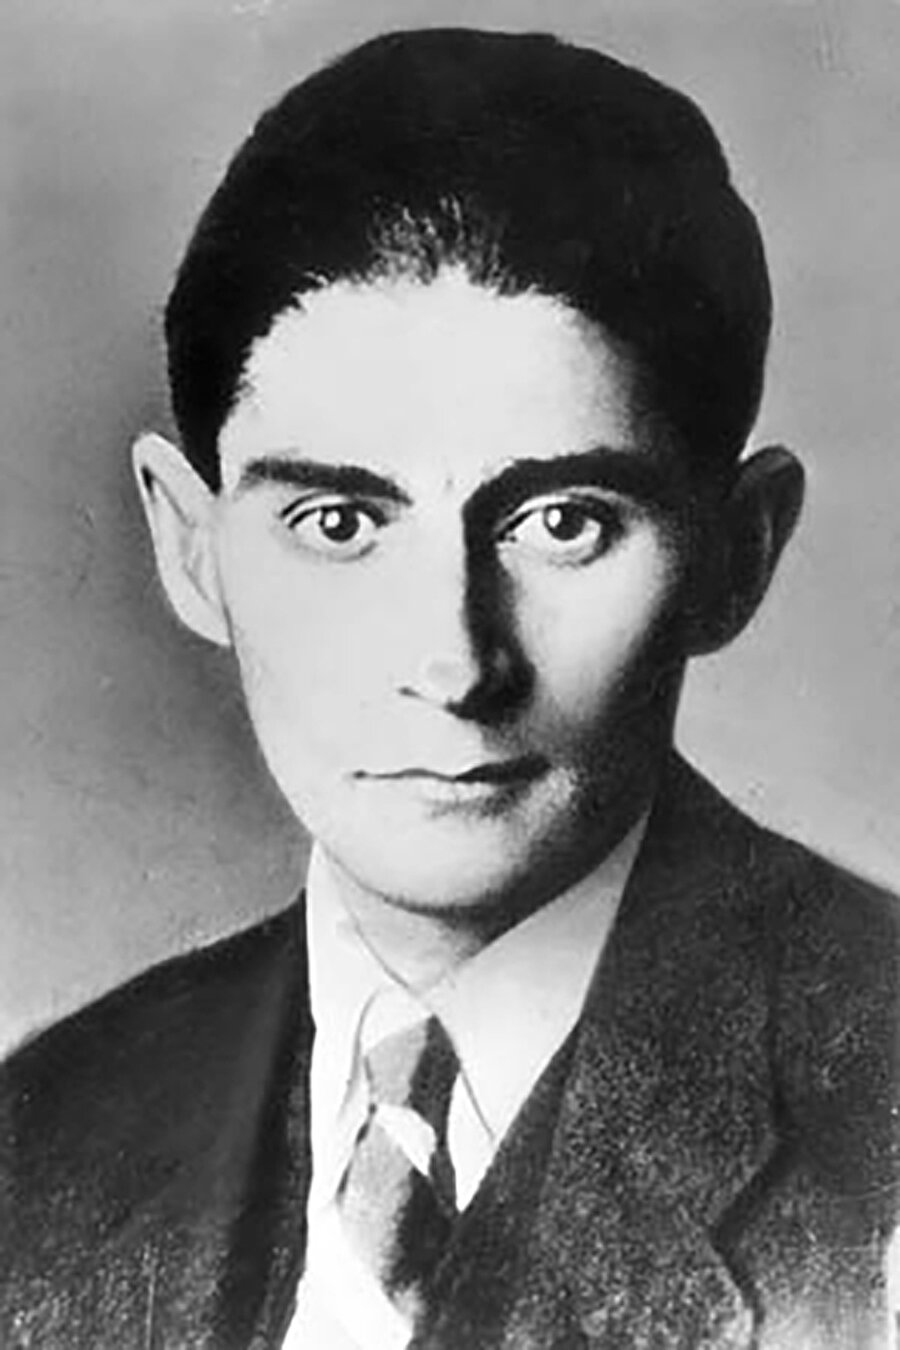 Franz Kafka 
Modern dünya edebiyatının en özgün yazarlarından biridir. “Dönüşüm” adlı eseriyle edebiyat tarihine eşsiz bir eser bırakmıştır.
